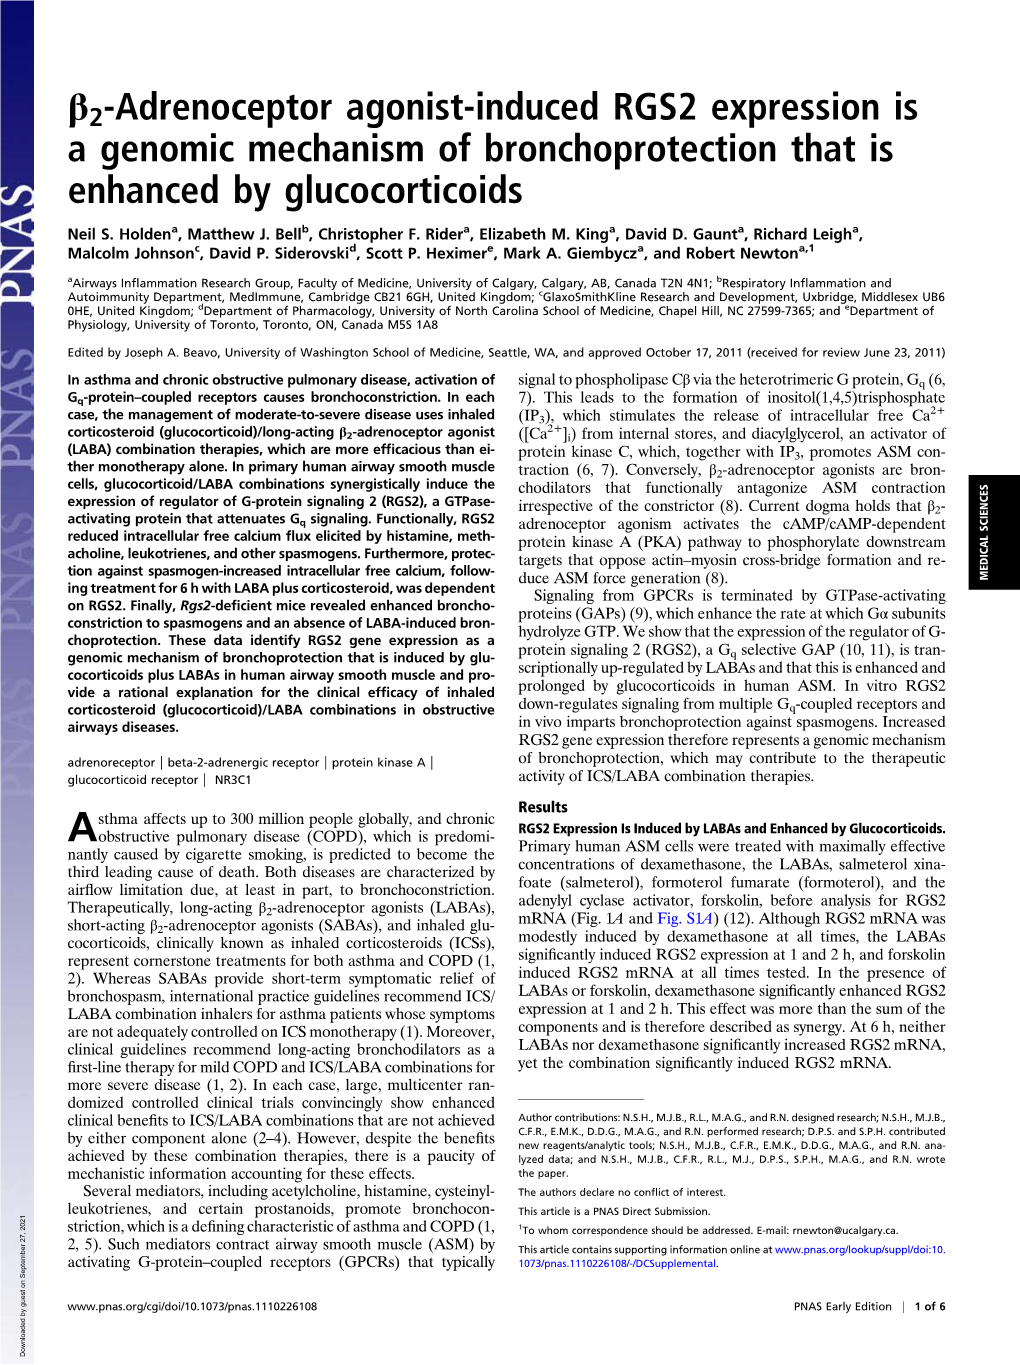 Β2-Adrenoceptor Agonist-Induced RGS2 Expression Is a Genomic Mechanism of Bronchoprotection That Is Enhanced by Glucocorticoids